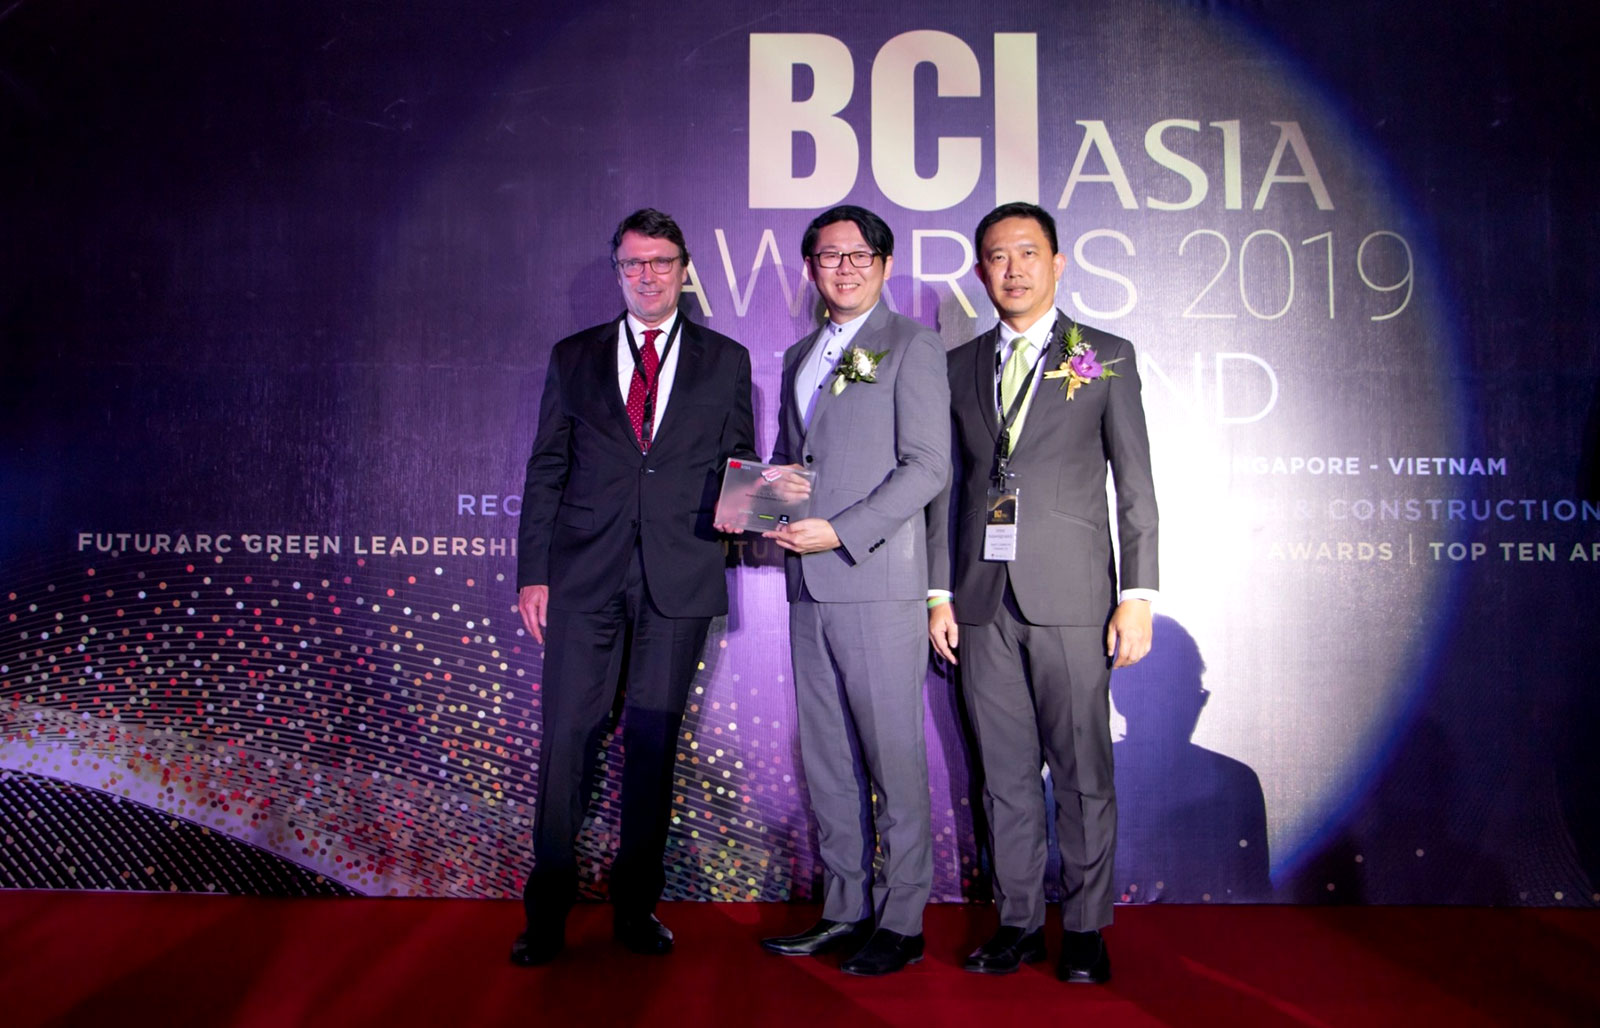 นายสิริพงศ์ ศรีสว่างวงศ์ ประธานเจ้าหน้าที่สายงานการตลาดและการขาย บริษัท ออริจิ้น พร็อพเพอร์ตี้ จำกัด (มหาชน)เป็นผู้แทนบริษัทฯ เข้ารับมอบรางวัล “BCI Asia Top 10 Developer Awards 2019” ในงาน BCI Asia Awards 2019